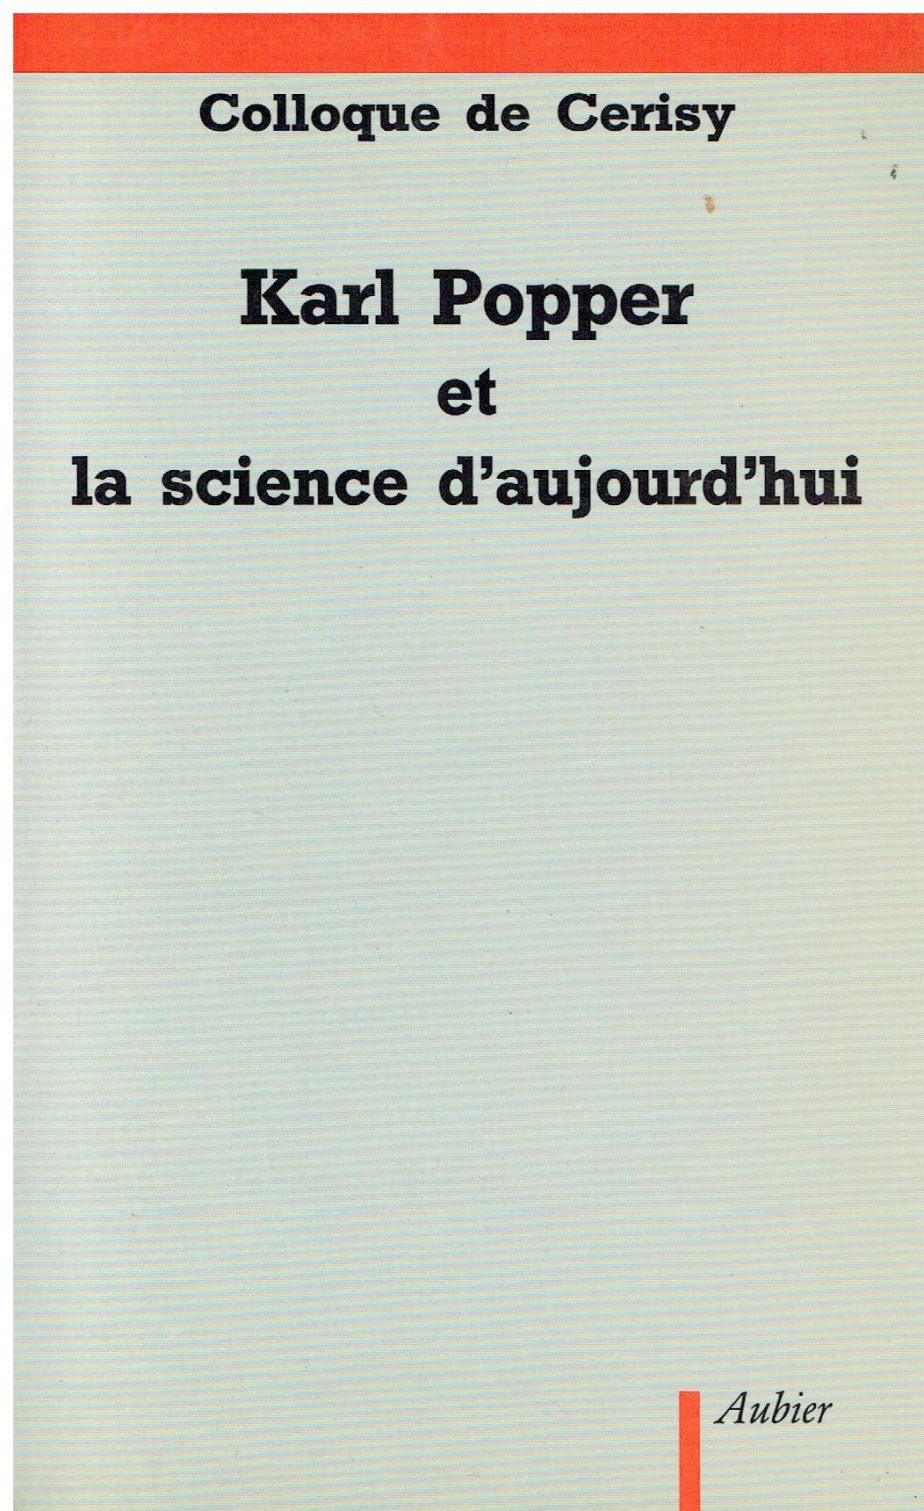 Karl Popper et la science d'aujourd'hui : actes du colloque organise par Renee Bouveresse au Centre culturel de Cerisy-la Salle du 1. au 11 juillet 1981